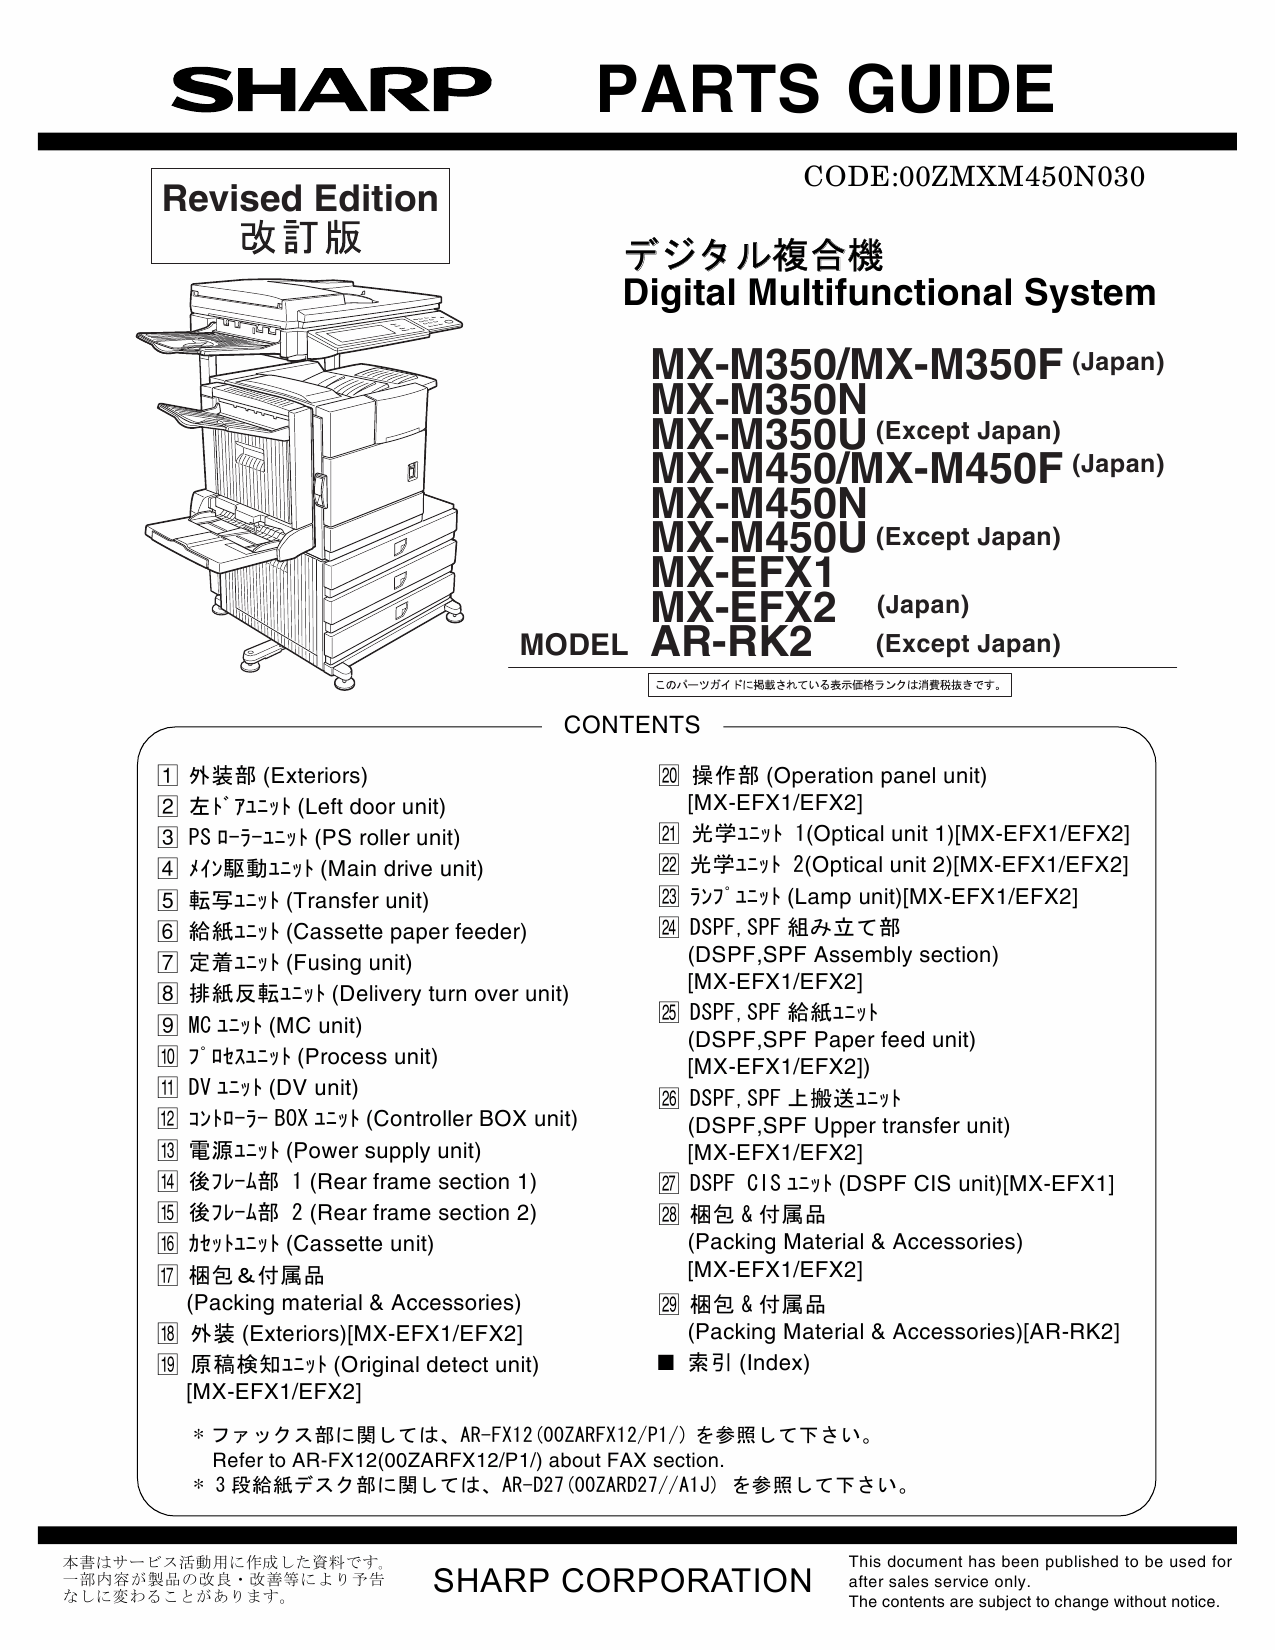 SHARP MX M350 M450 N U Parts Manual-1